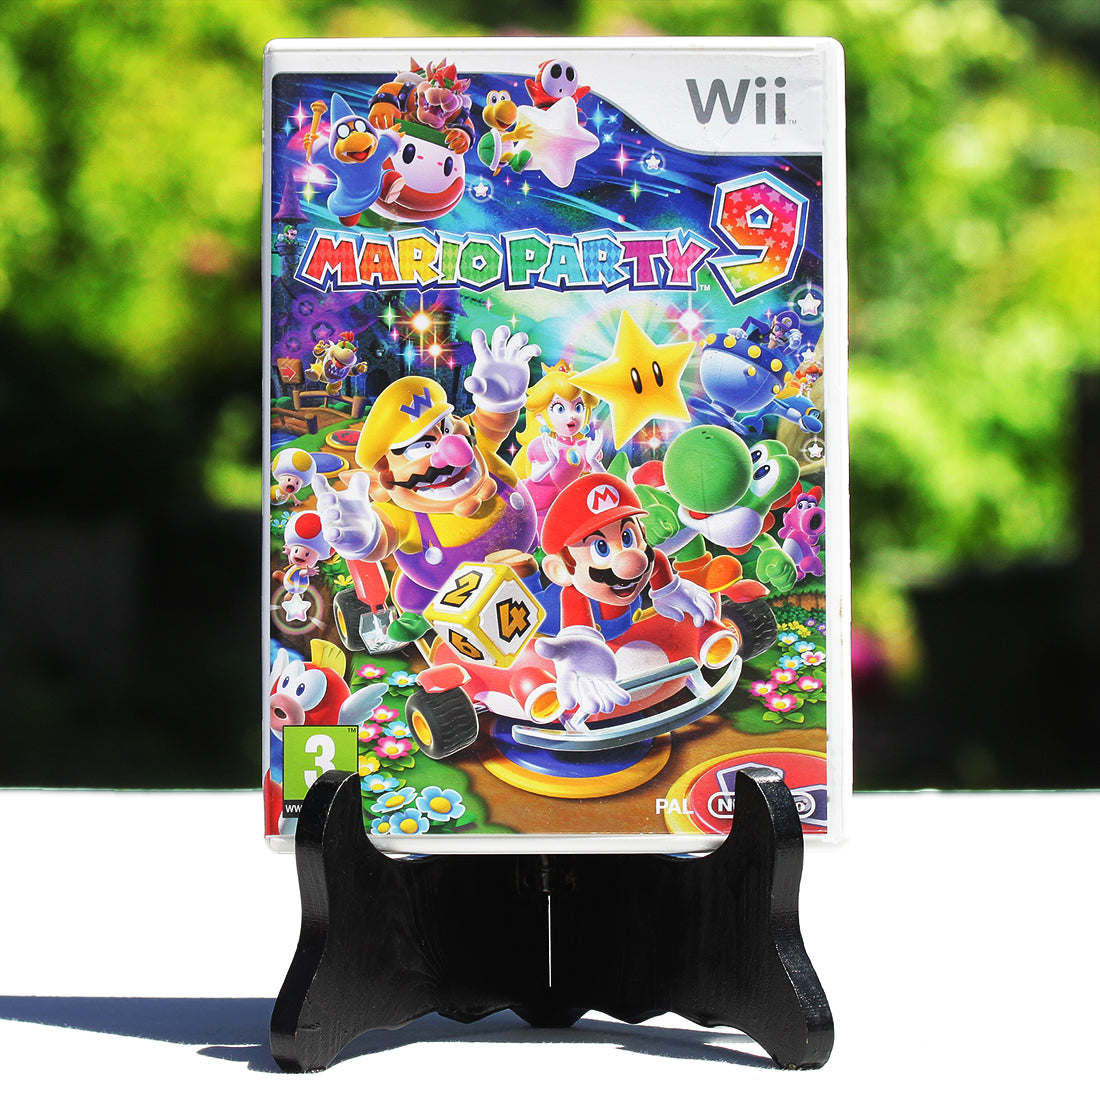 Jeu vidéo Nintendo Wii Mario Party 9 complet